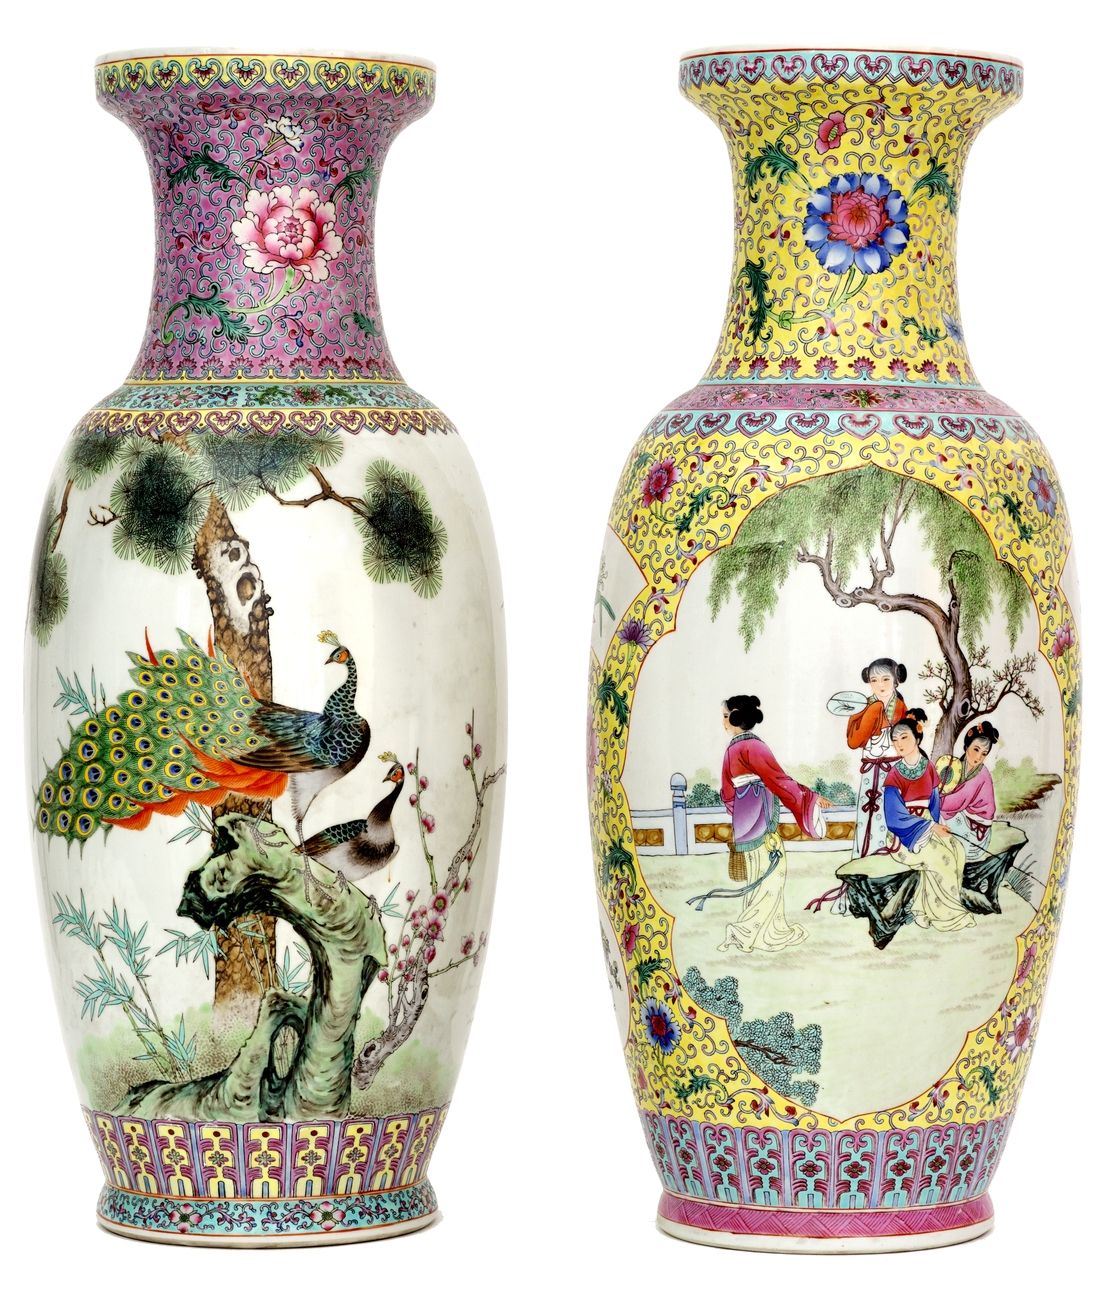 Null 中国，20世纪
两个用法米勒珐琅彩装饰的瓷器花瓶，上面有卡图的朝臣和花石上的孔雀。
伪装的标记。
高度：62厘米和62.5厘米